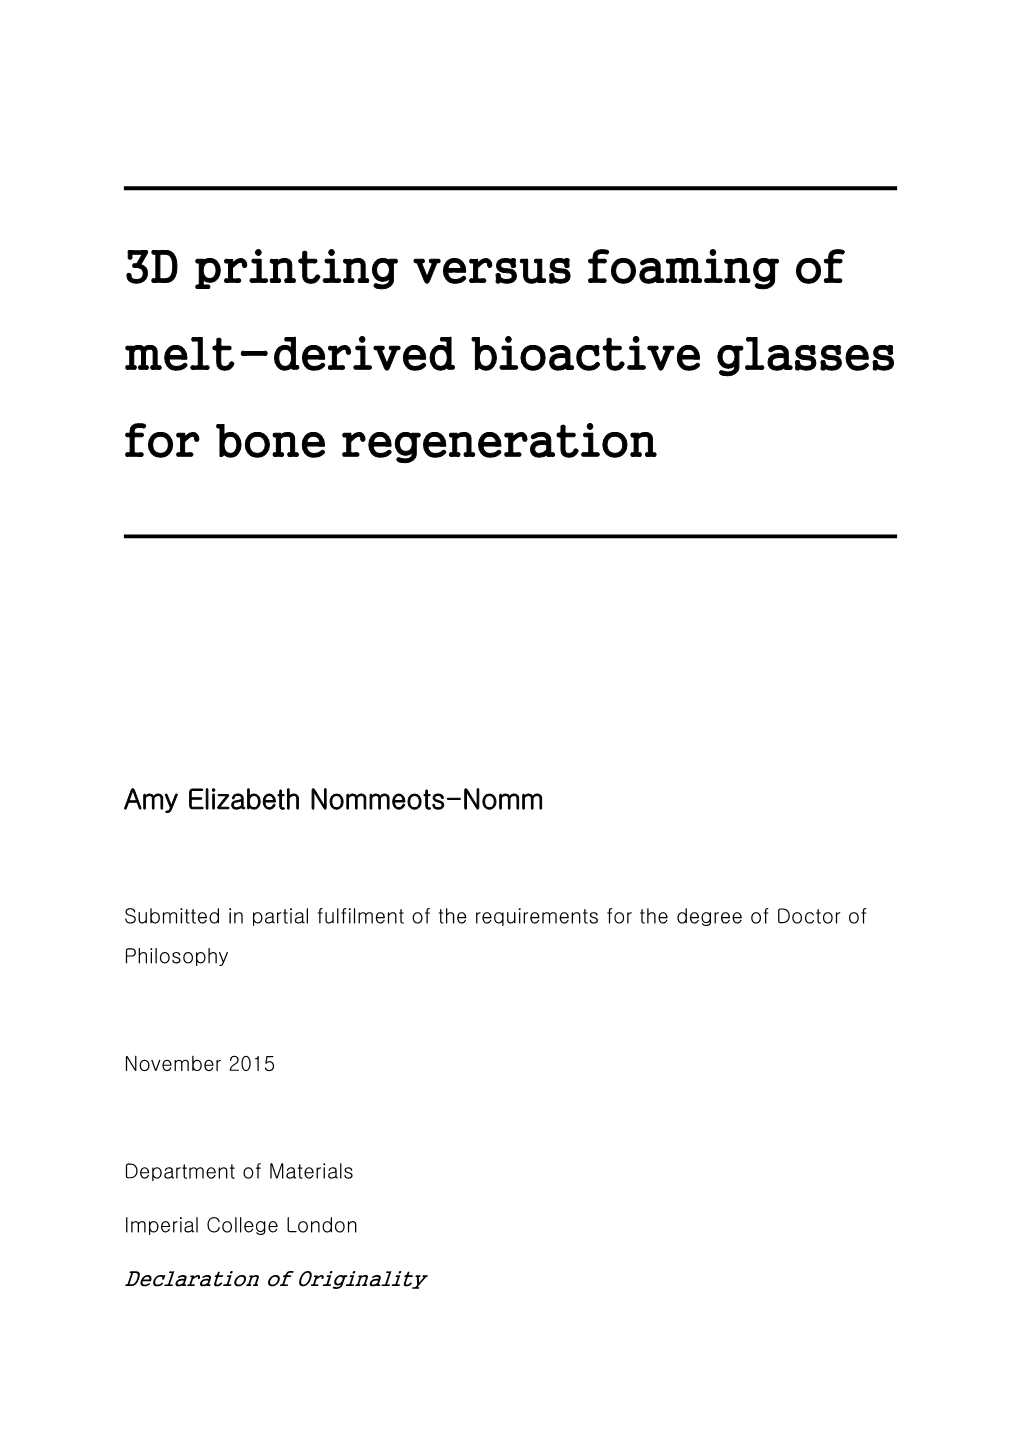 3D Printing Versus Foaming of Melt-Derived Bioactive Glasses for Bone Regeneration